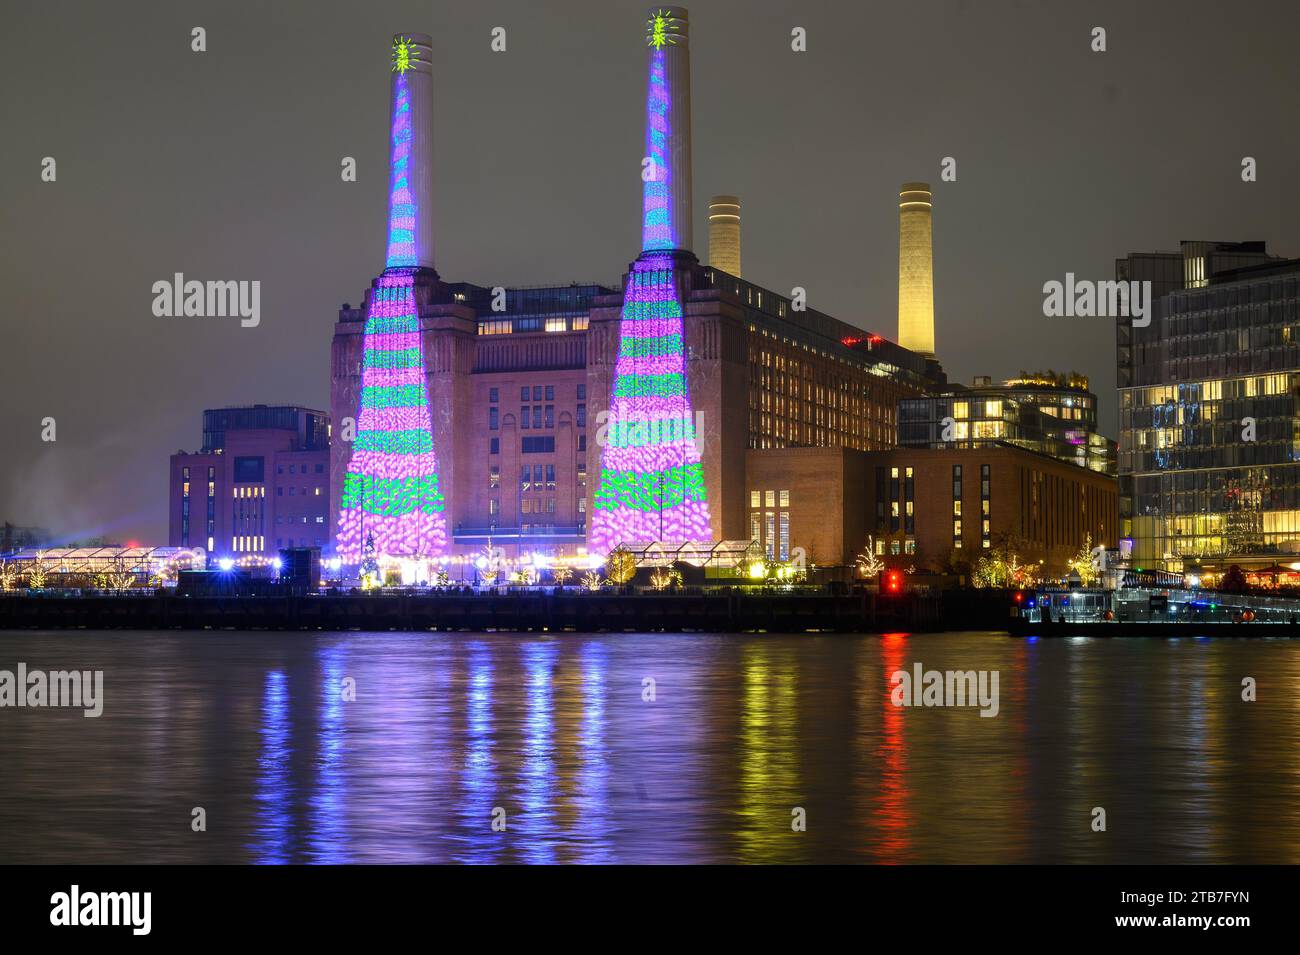 London, Großbritannien. Dezember 2023. Mit einem ipad hat David Hockney zwei große, grün und violett gestreifte Weihnachtsbäume geschaffen, von denen jeder einen goldenen Stern an der Spitze hat. Die zwei 100 Meter hohen Schornsteine mit Blick auf die Themse sind auf den Kraftwerken zu sehen. Das Weihnachtskunstwerk soll den Menschen in London, Großbritannien, „Freude und Hoffnung“ bringen. Credit: Mary-Lu Bakker/Alamy Live News Credit: Mary-Lu Bakker/Alamy Live News Stockfoto